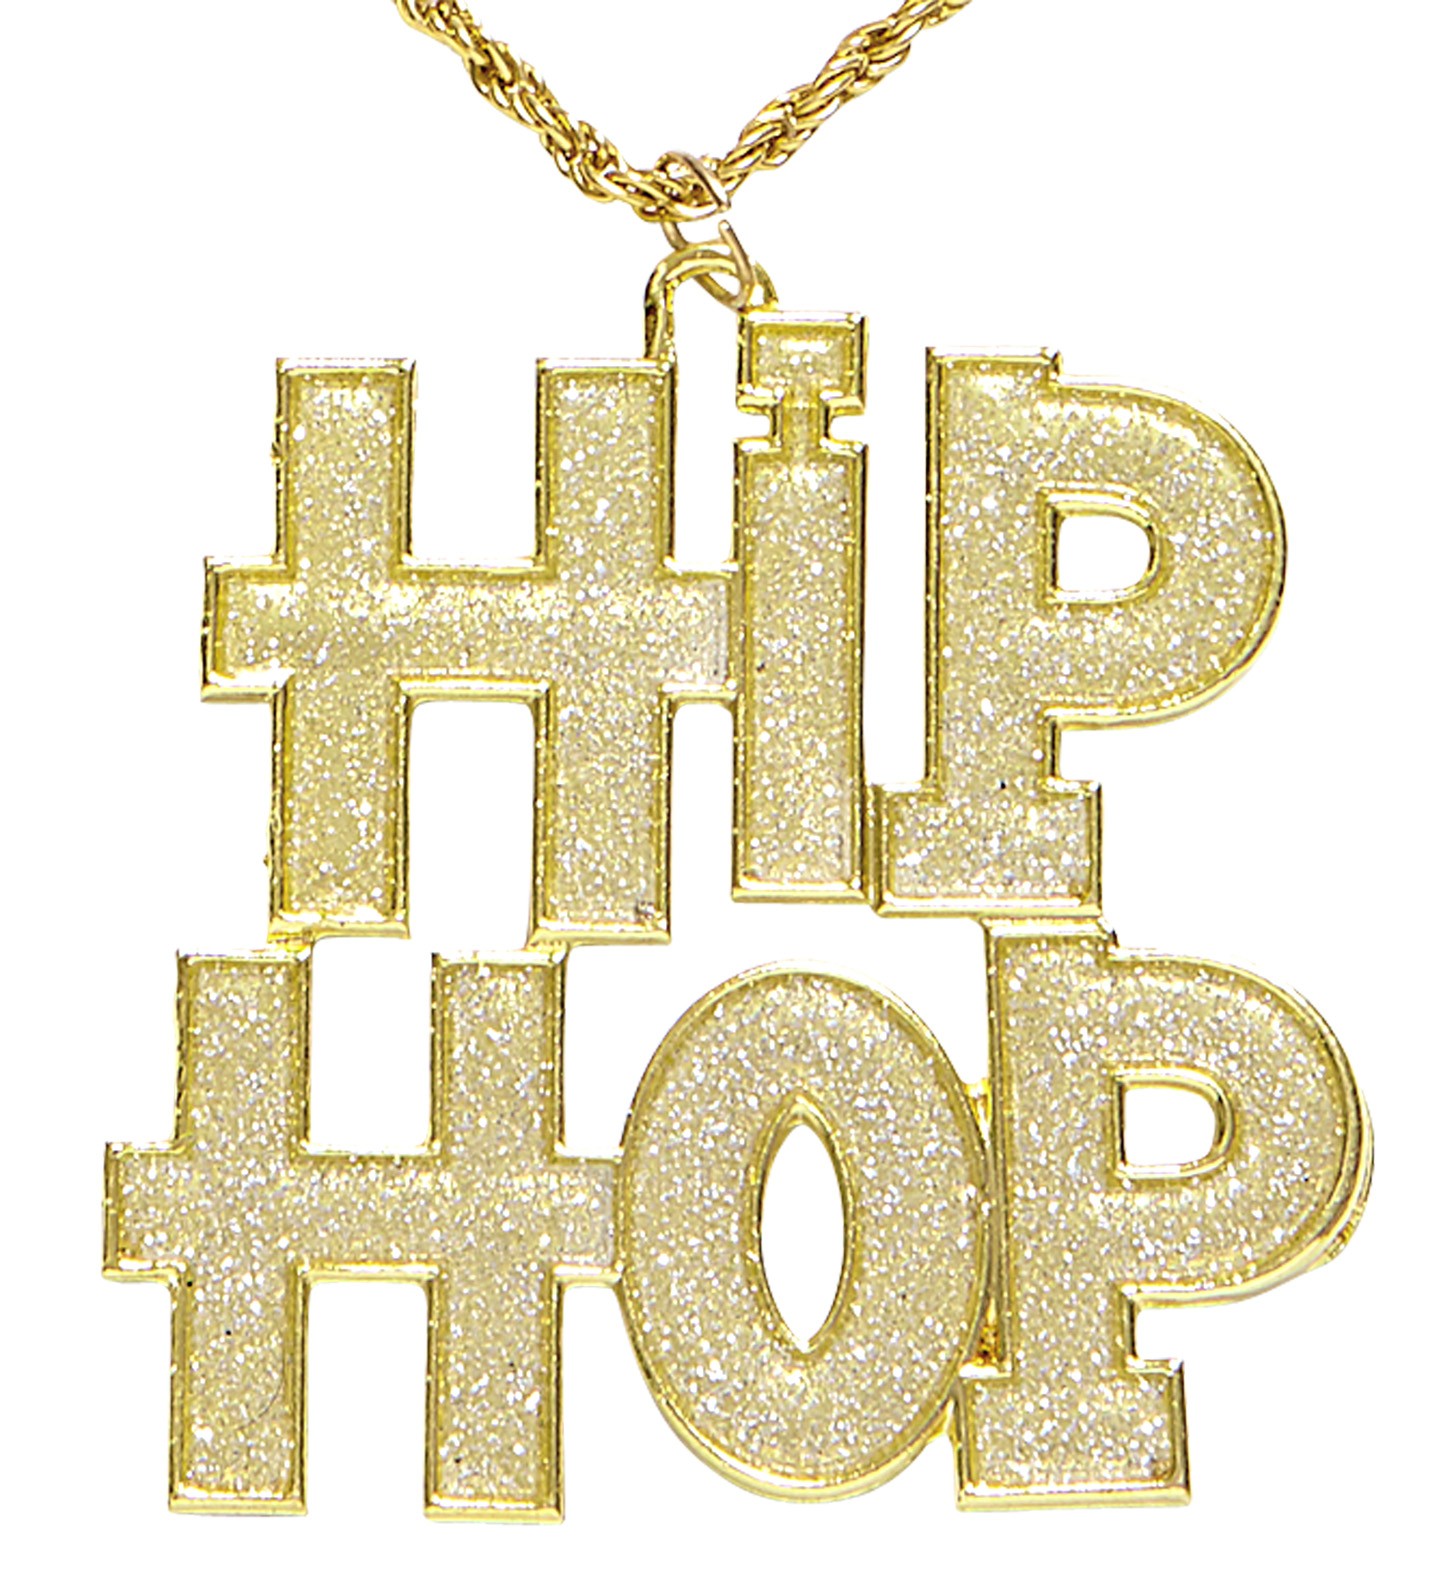 kiem zweer Authenticatie Gouden hip hop ketting kopen ? | Jokershop.be feestwinkel